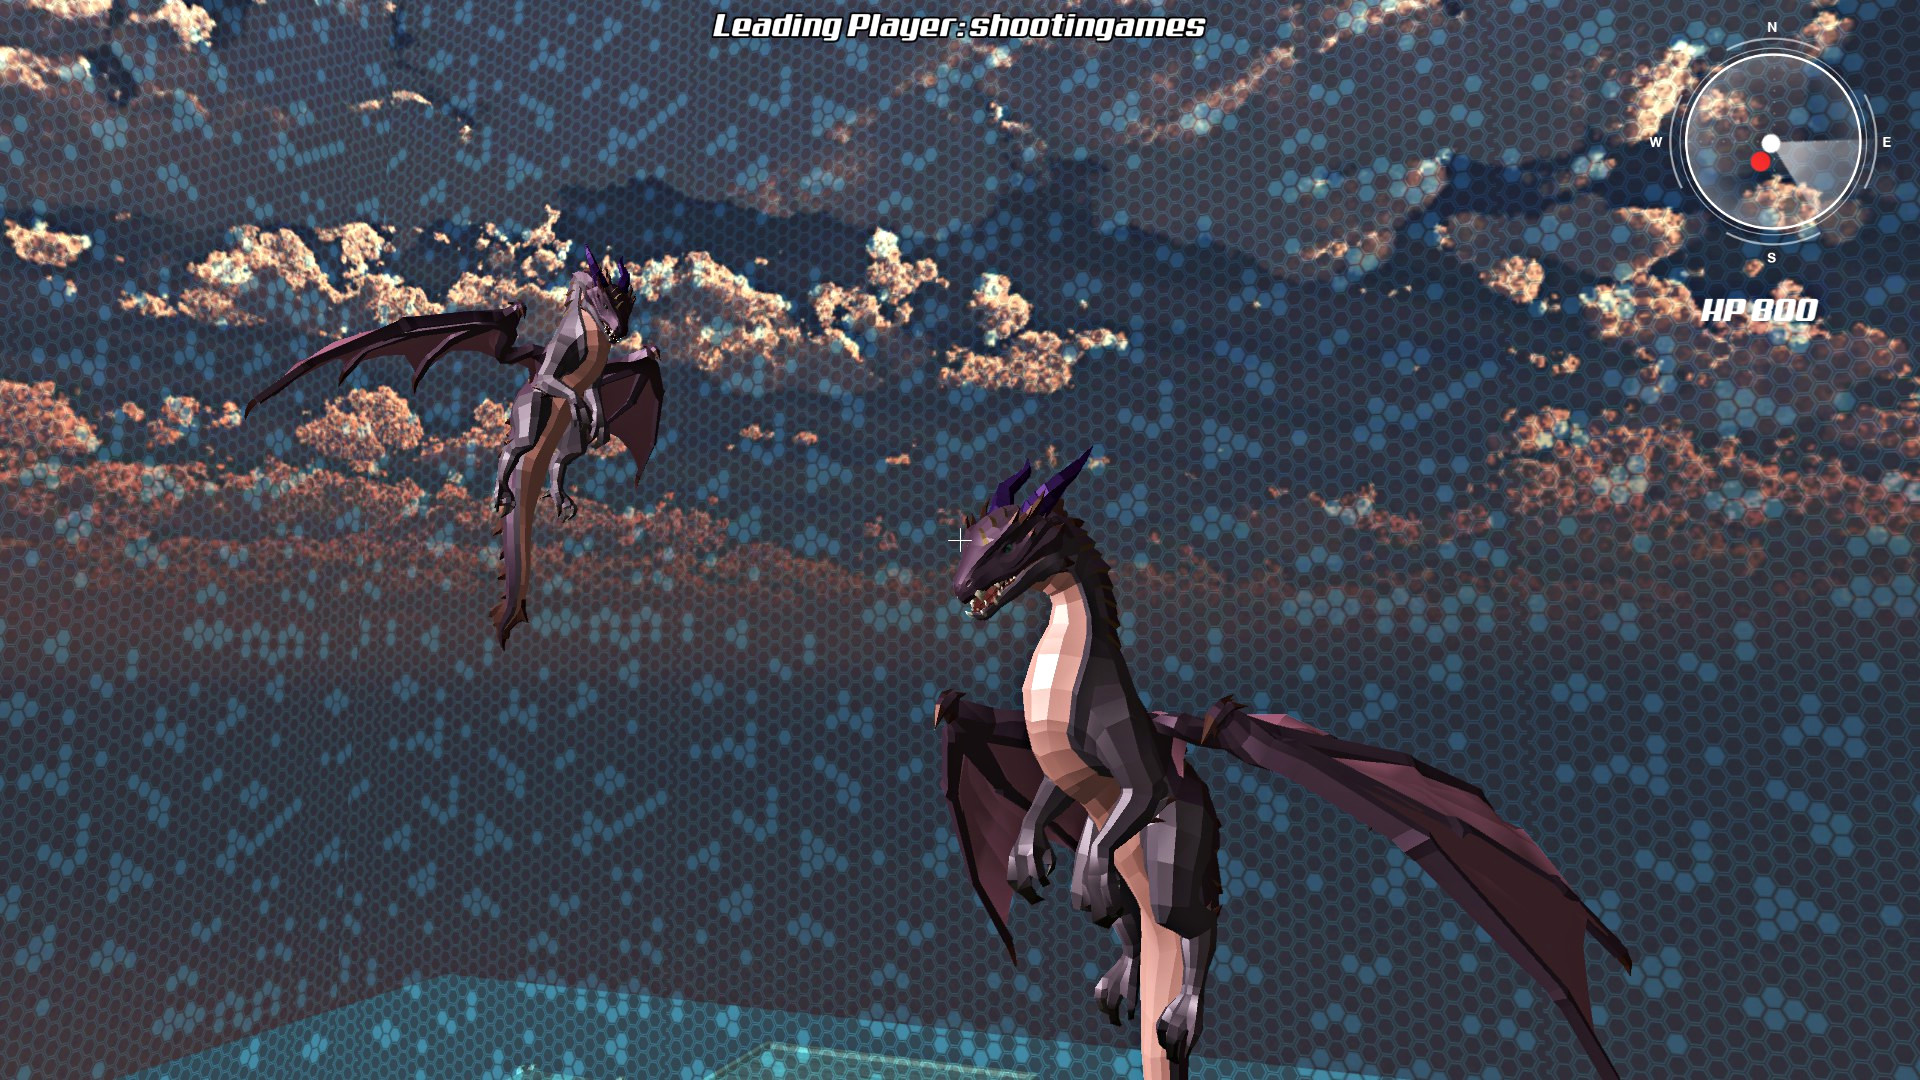 Dragon Simulator Multiplayer screenshot